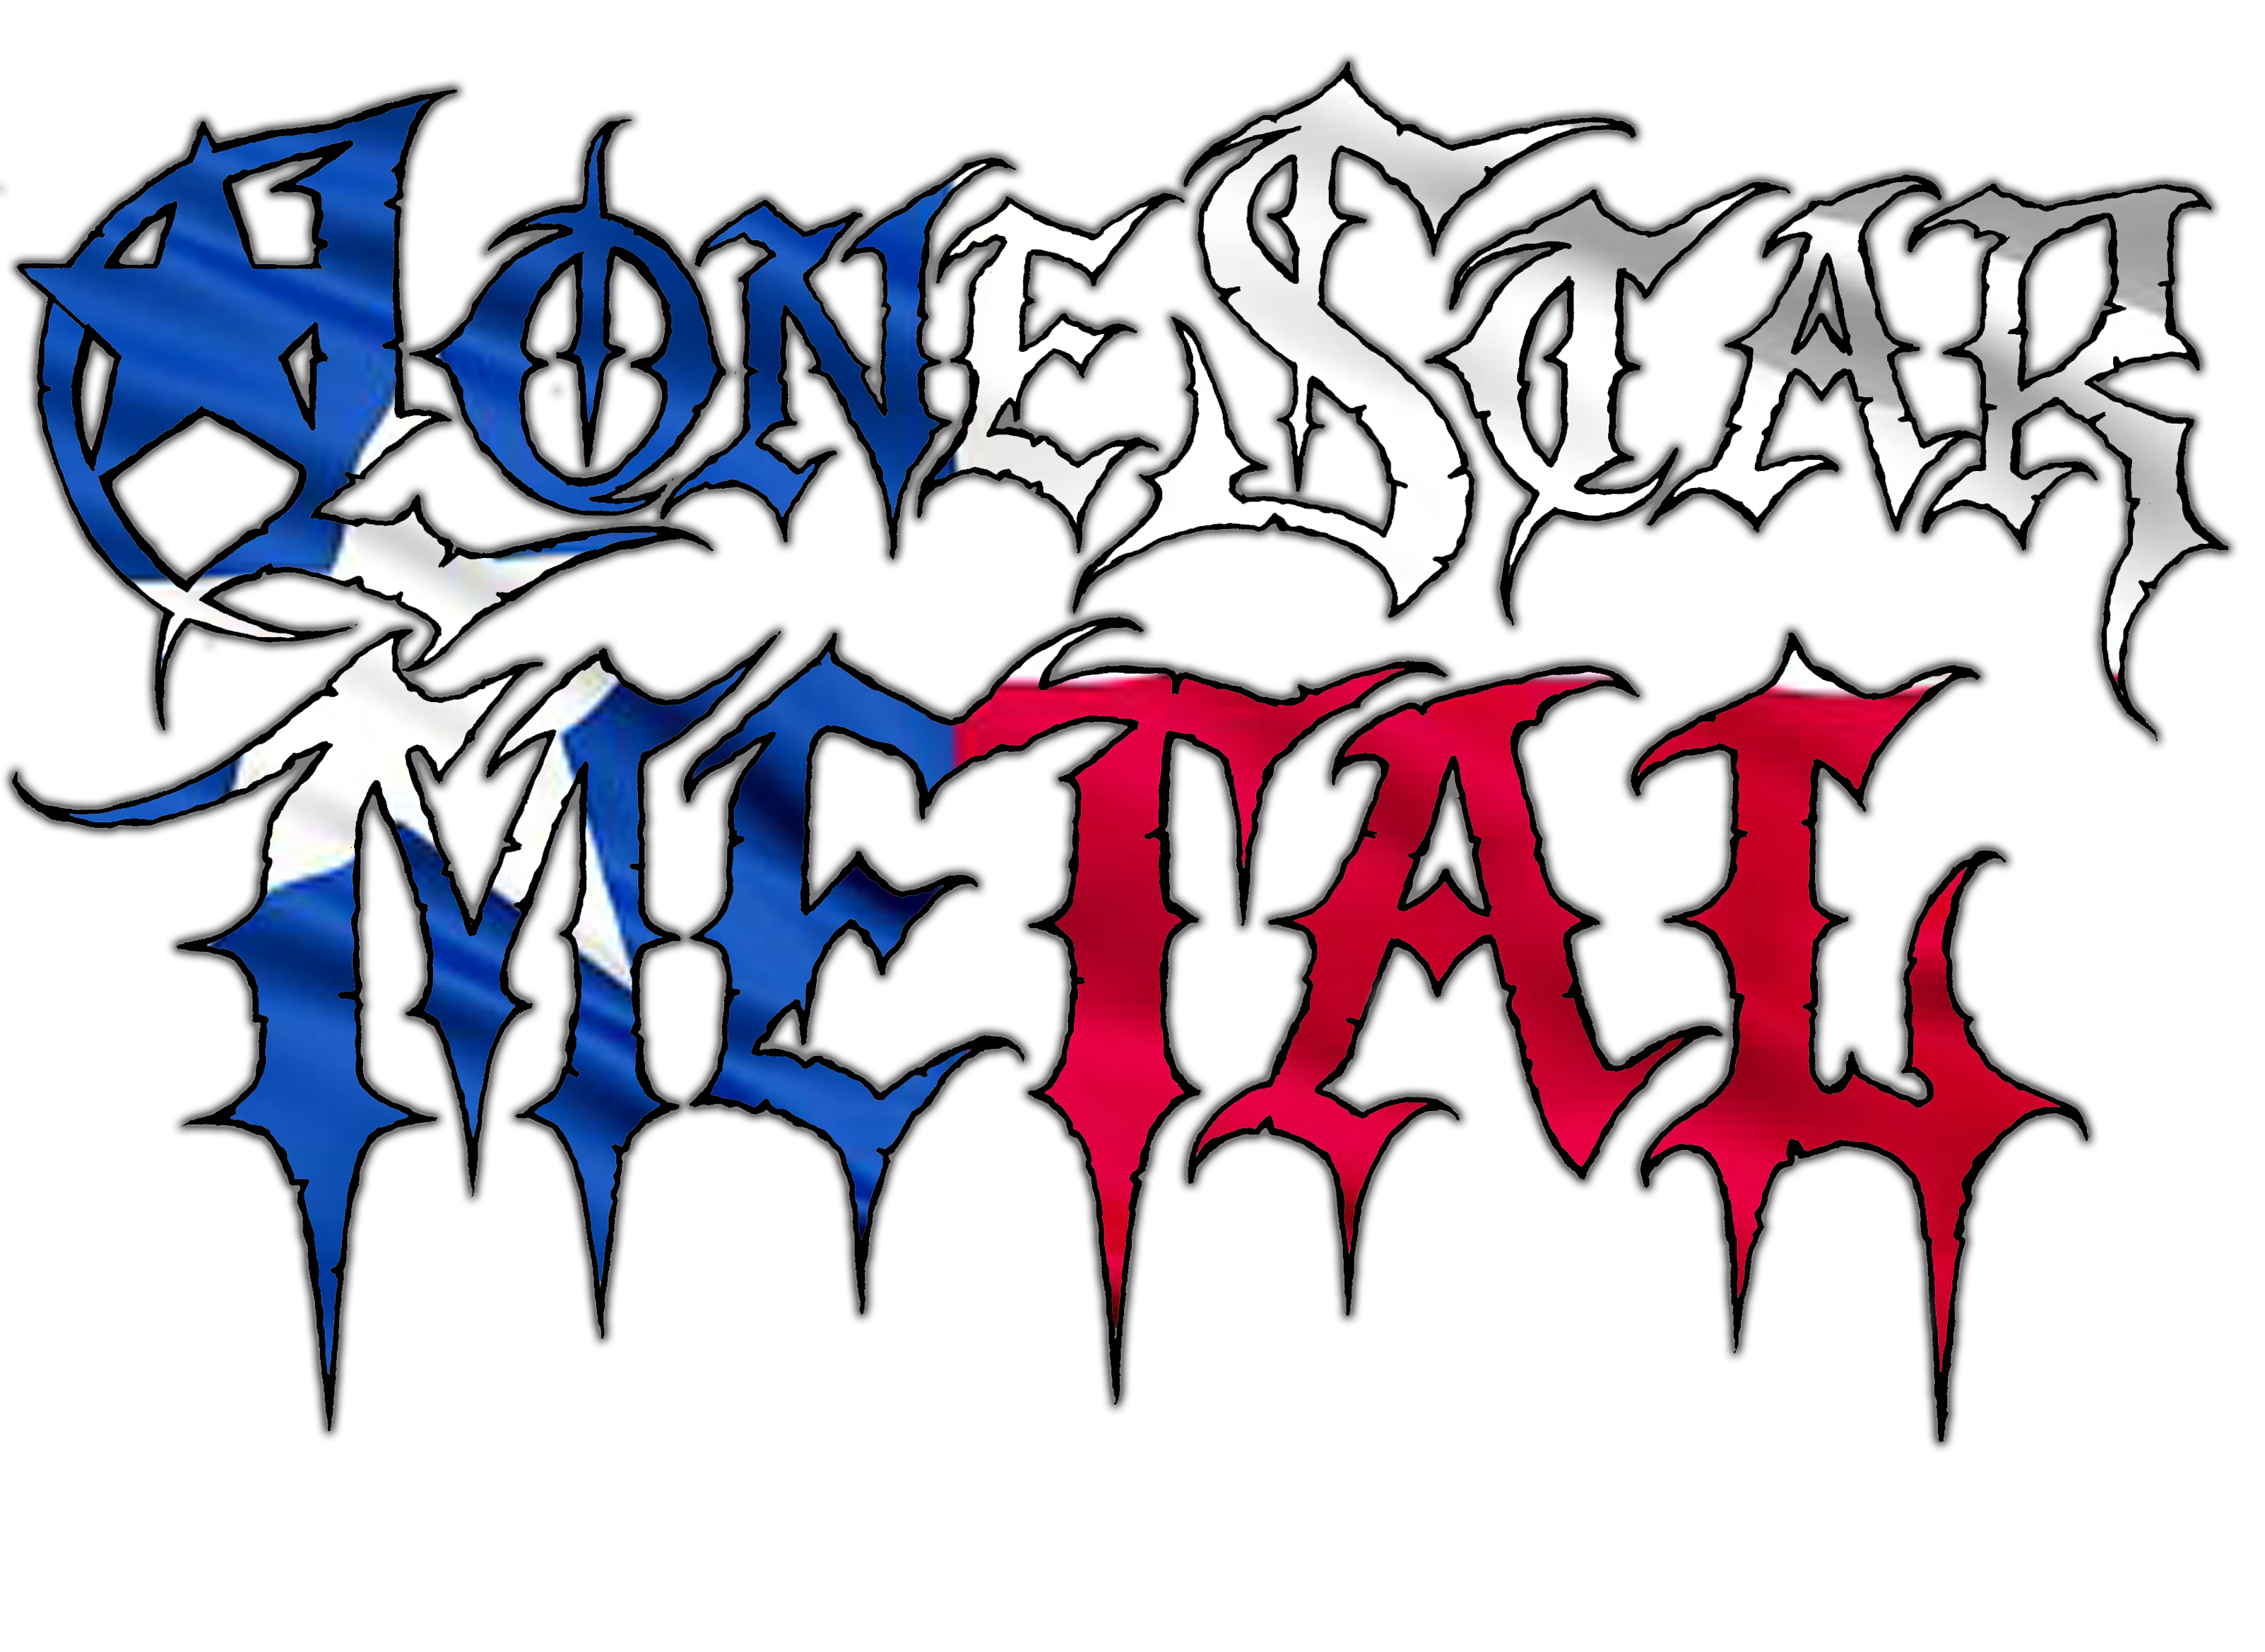 Lone Star Metal